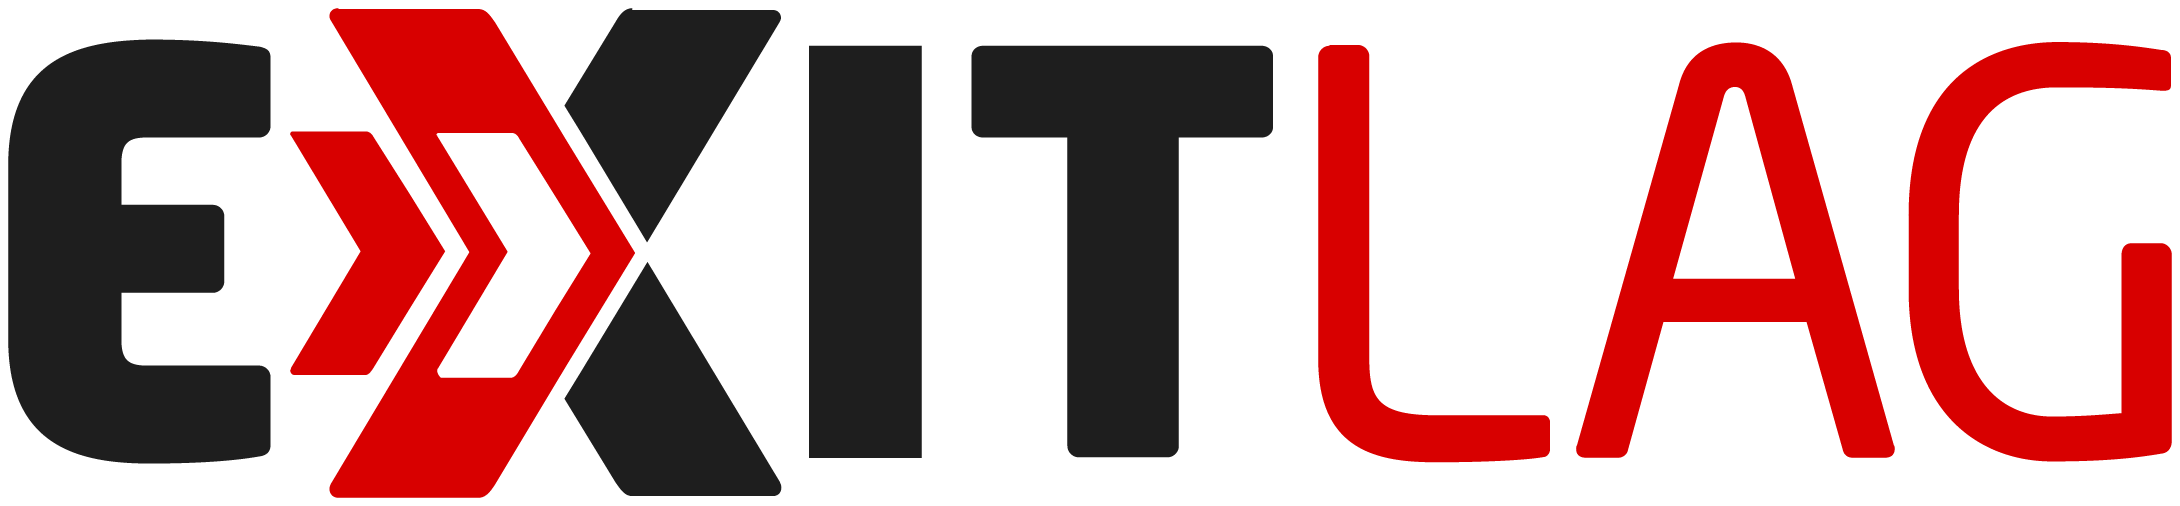 logo Exitlag